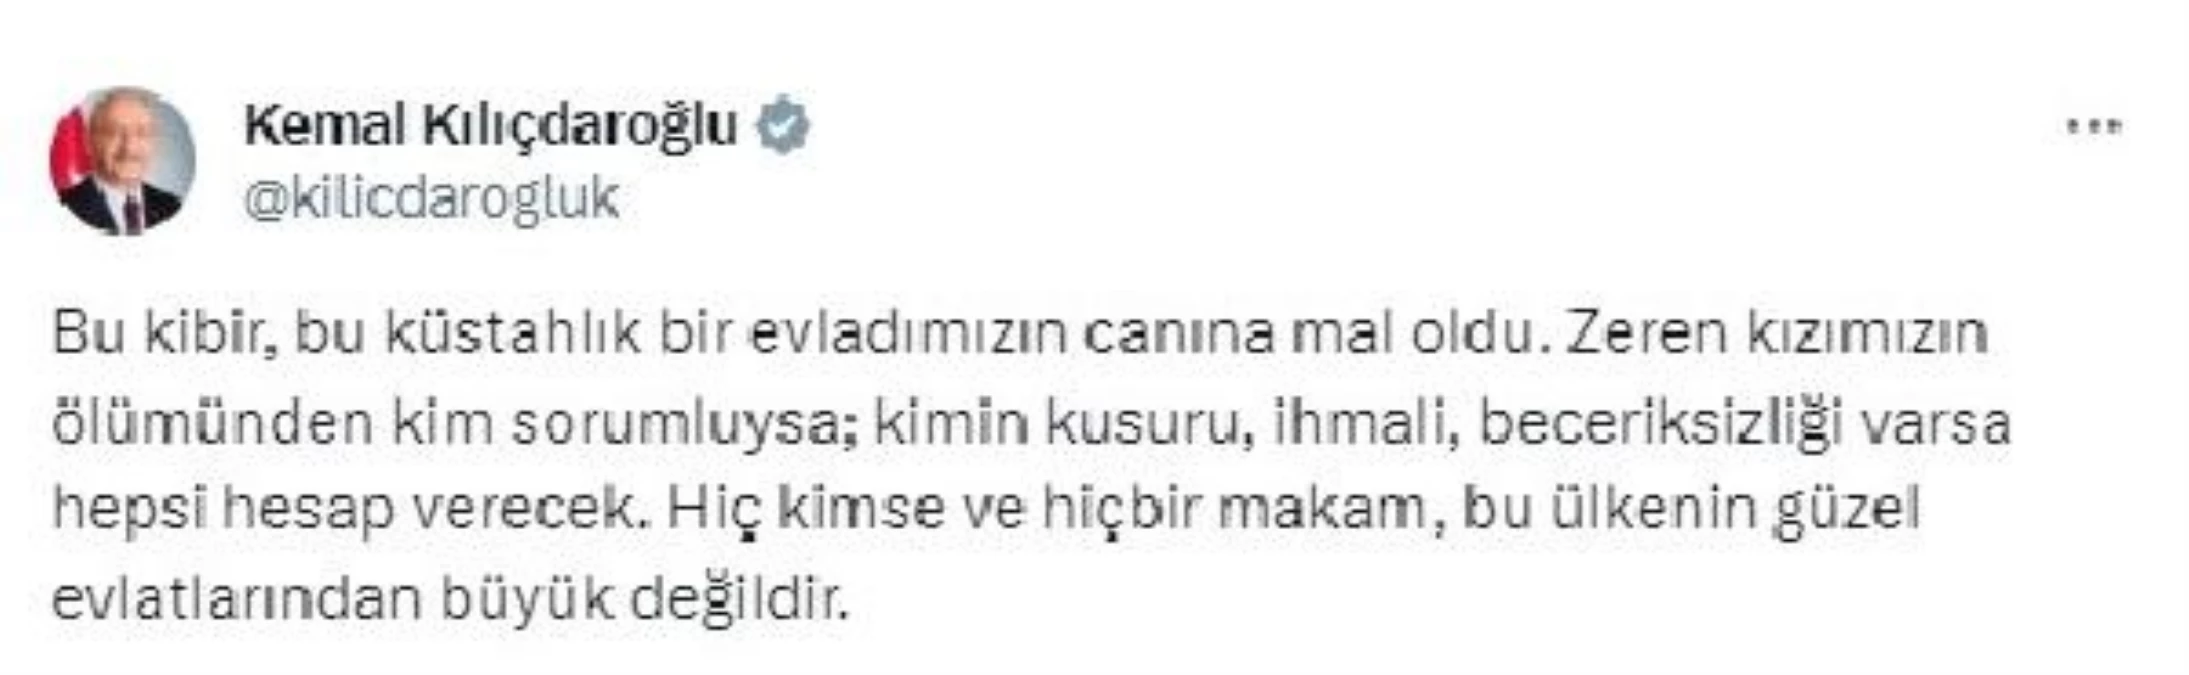 Kılıçdaroğlu: Zeren kızımızın ölümünden kim sorumluysa hepsi hesap verecek